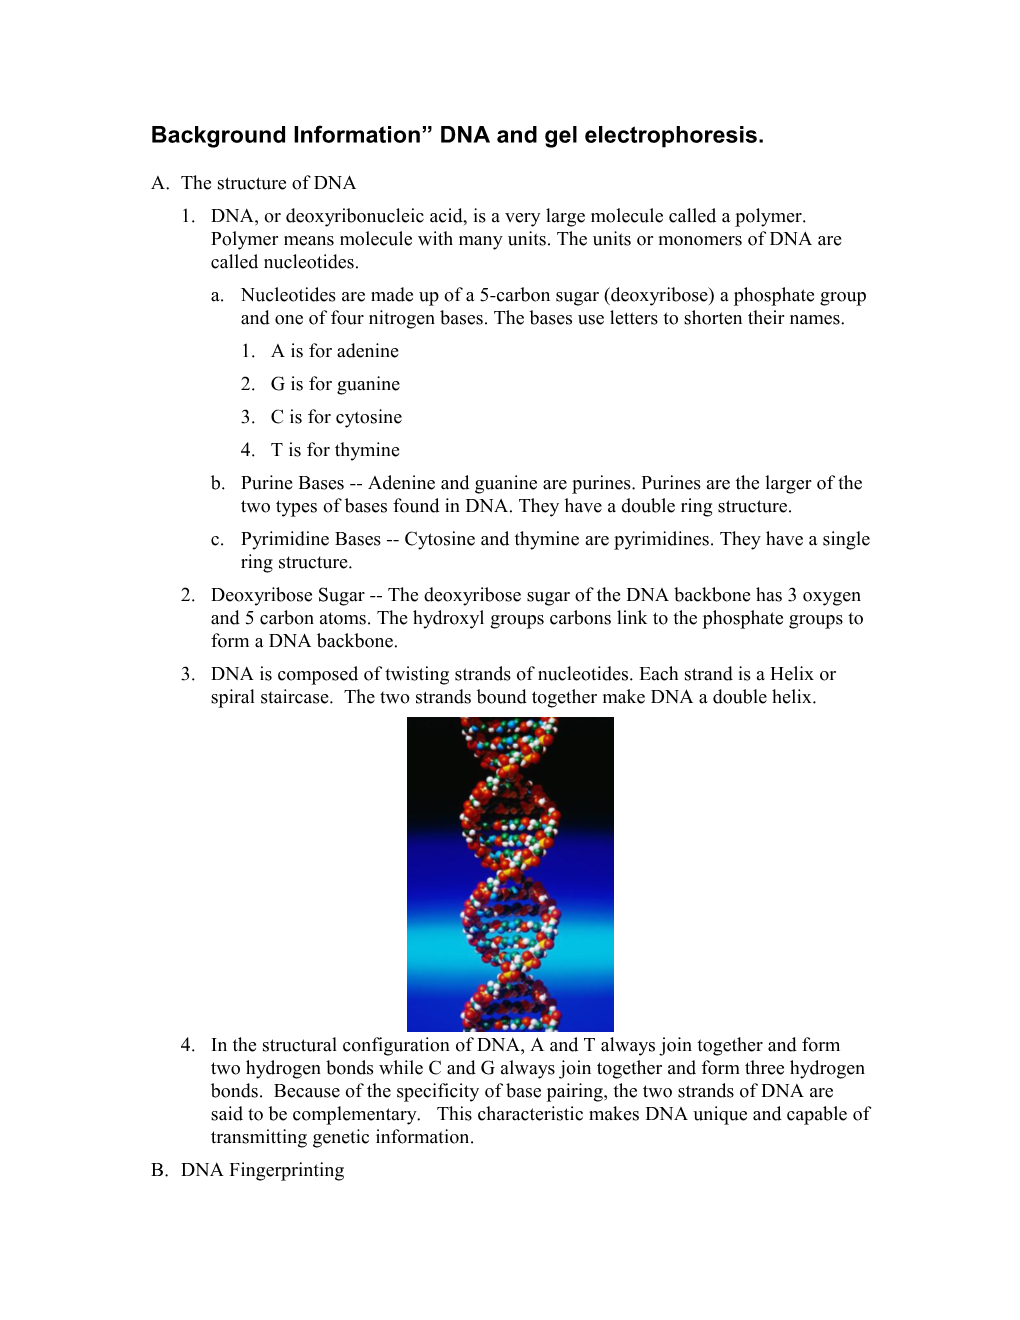 Background Information DNA and Gel Electrophoresis